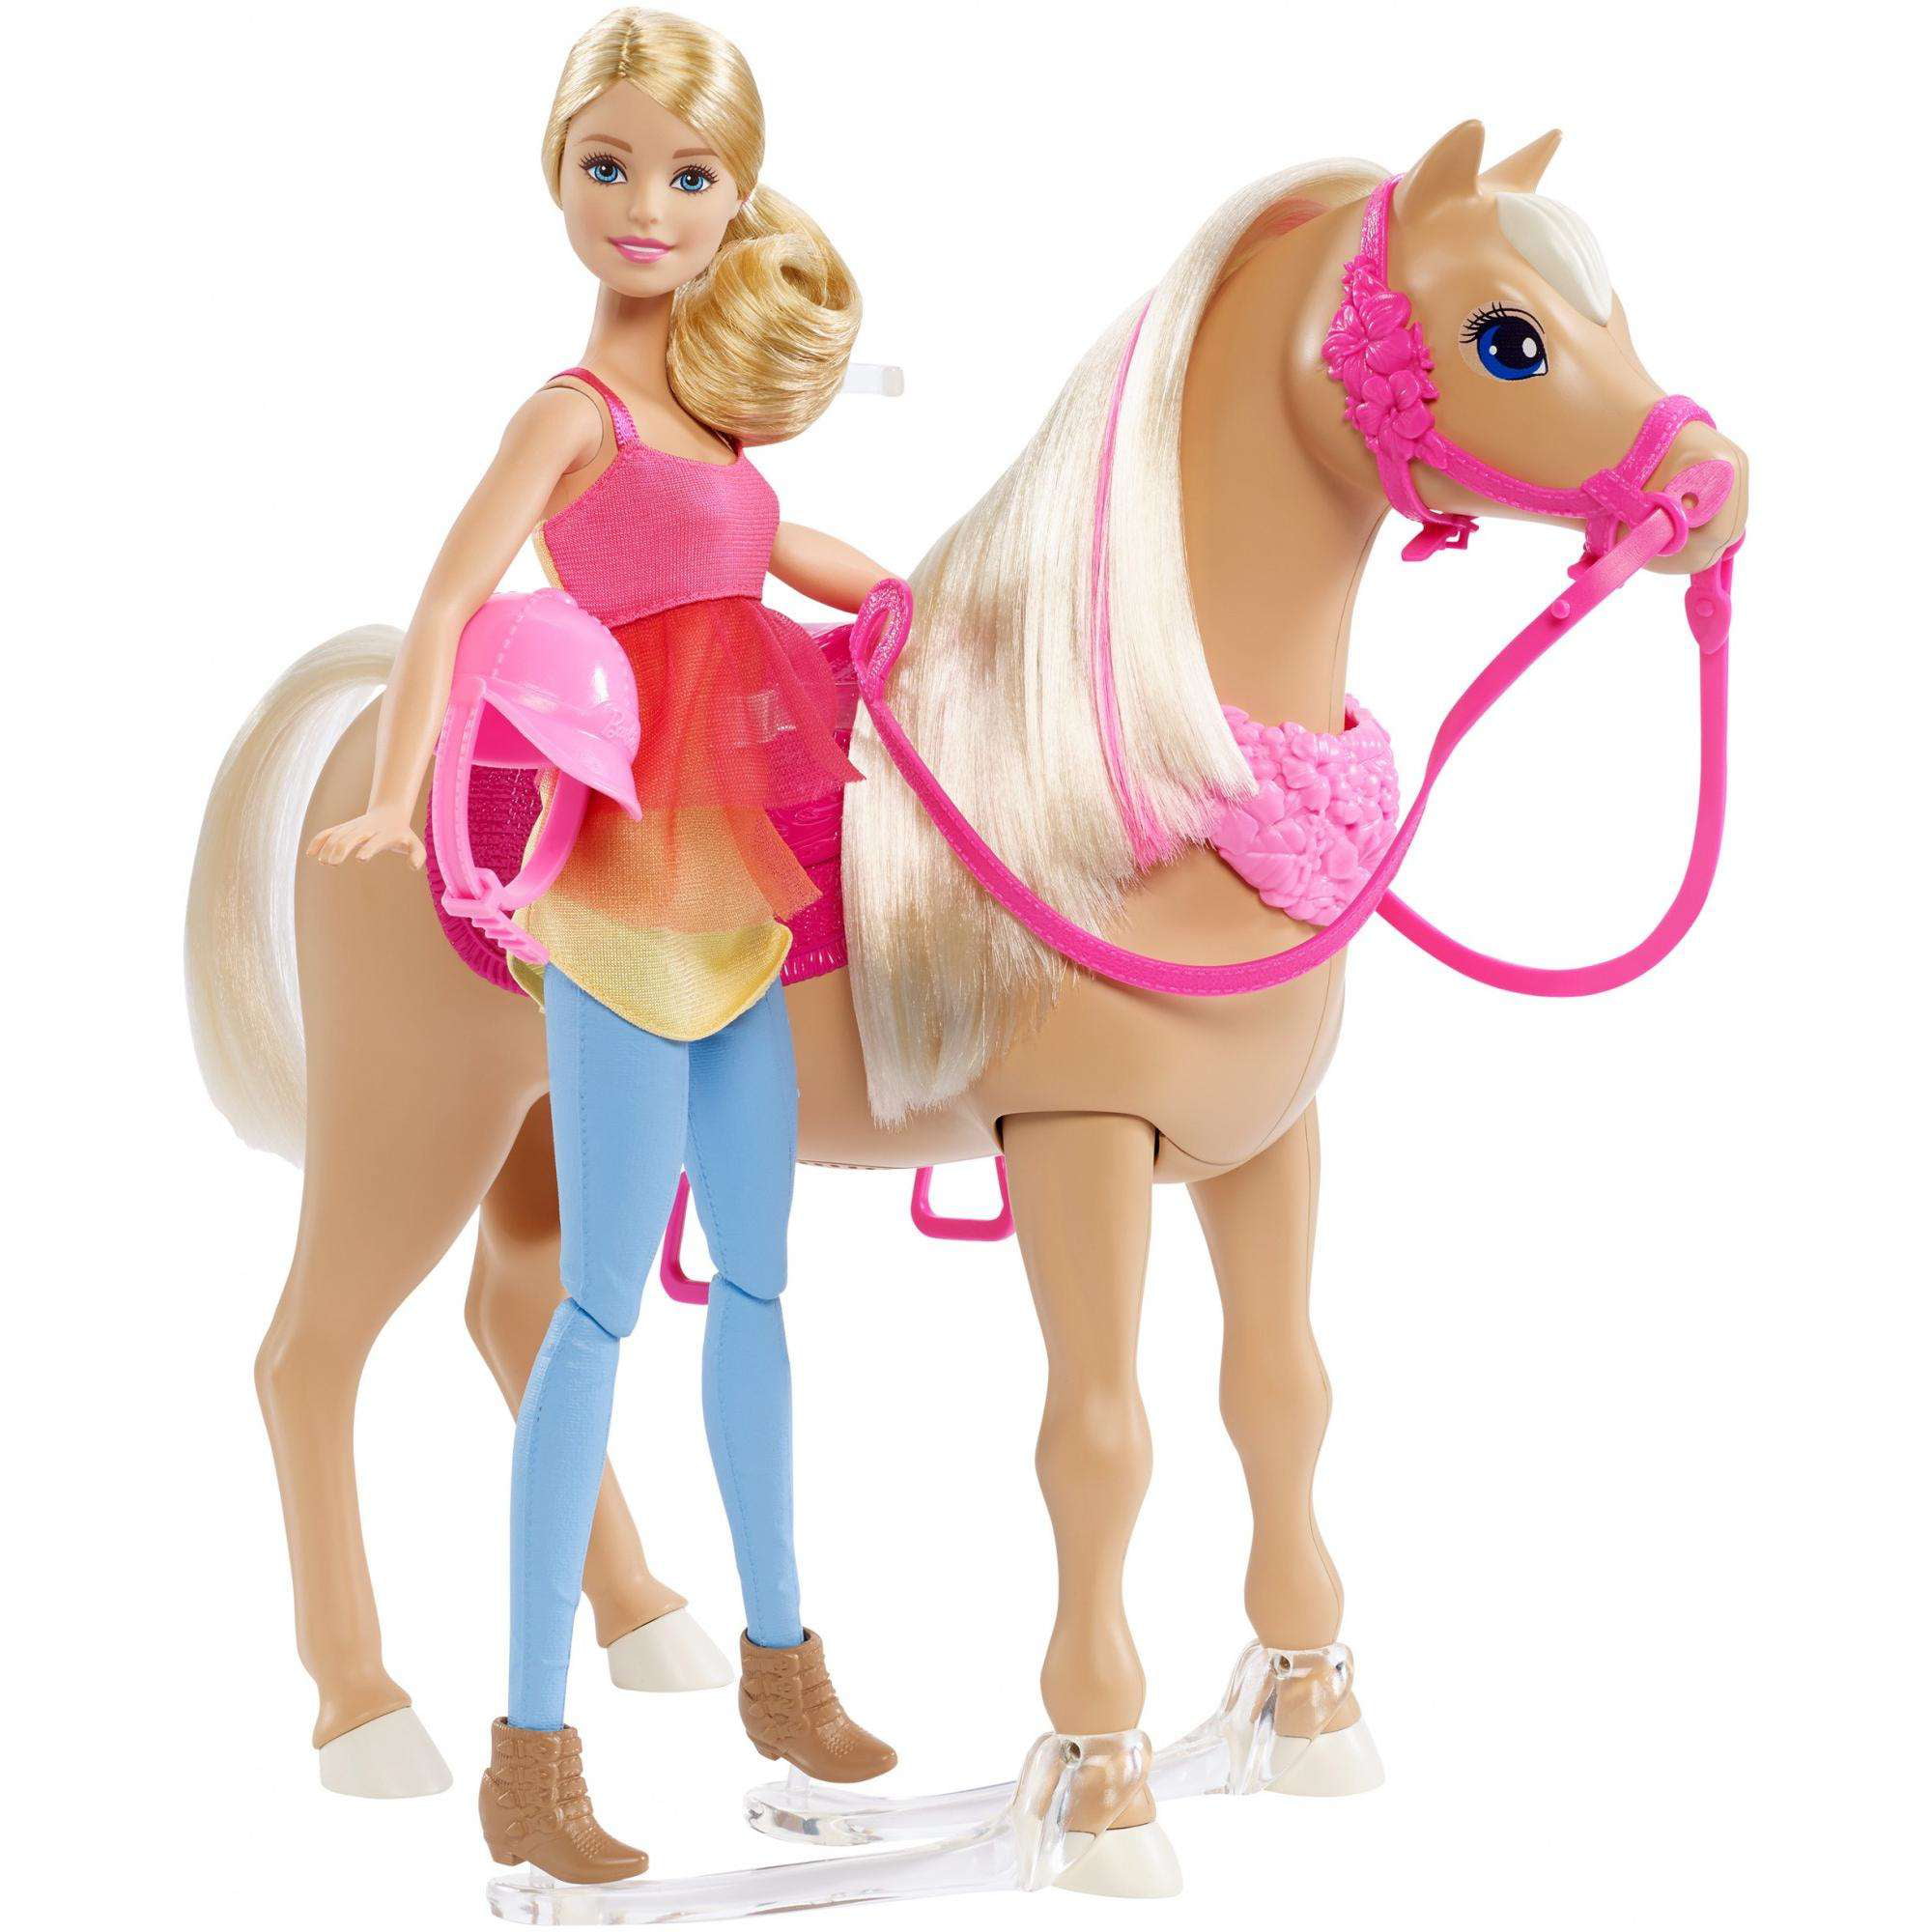 Игрушка барби купить. Интерактивный набор Barbie и Танцующая лошадка, 29 см, dmc30. Набор Barbie и лошадь мечты, 29 см, frv36. Набор Barbie с лошадью, dhb68. Барби с лошадкой Барби с лошадкой Барби с лошадкой.